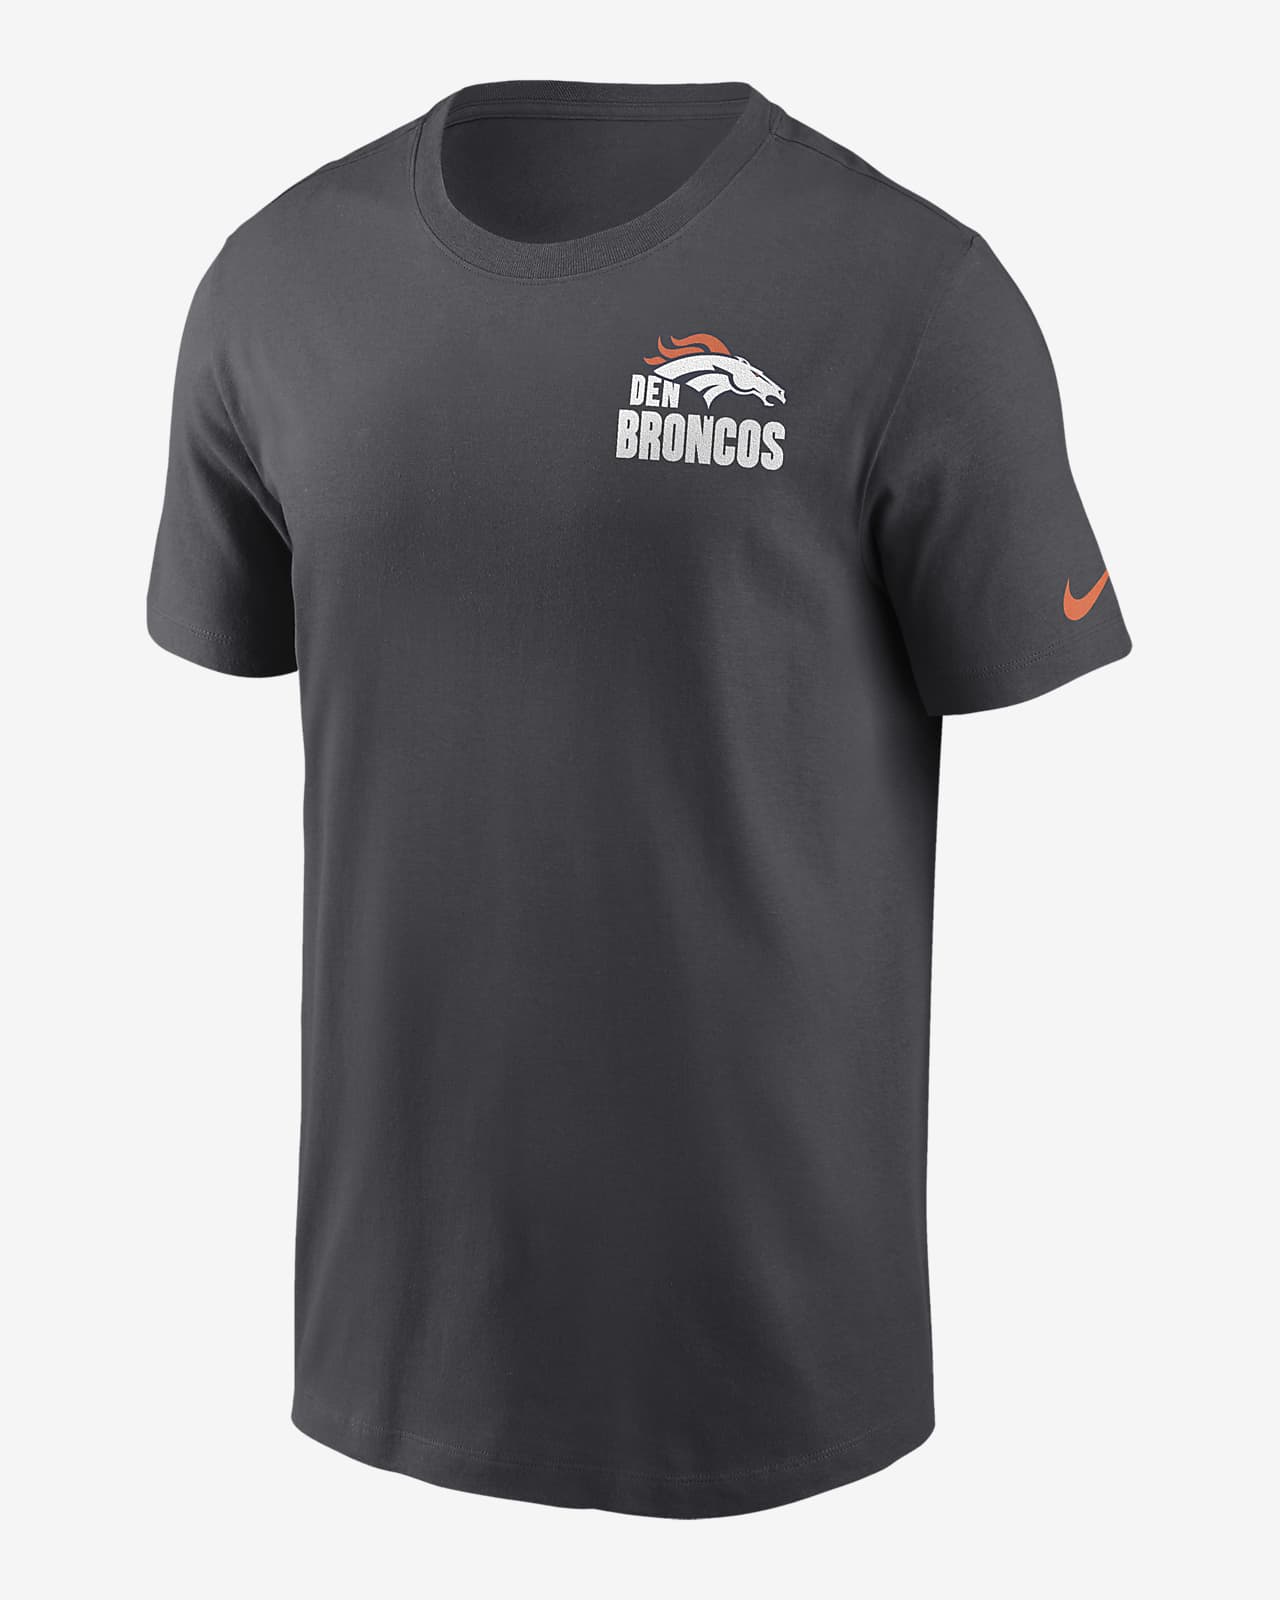 Denver Broncos Blitz Team Essential Men's Nike NFL T-Shirt.